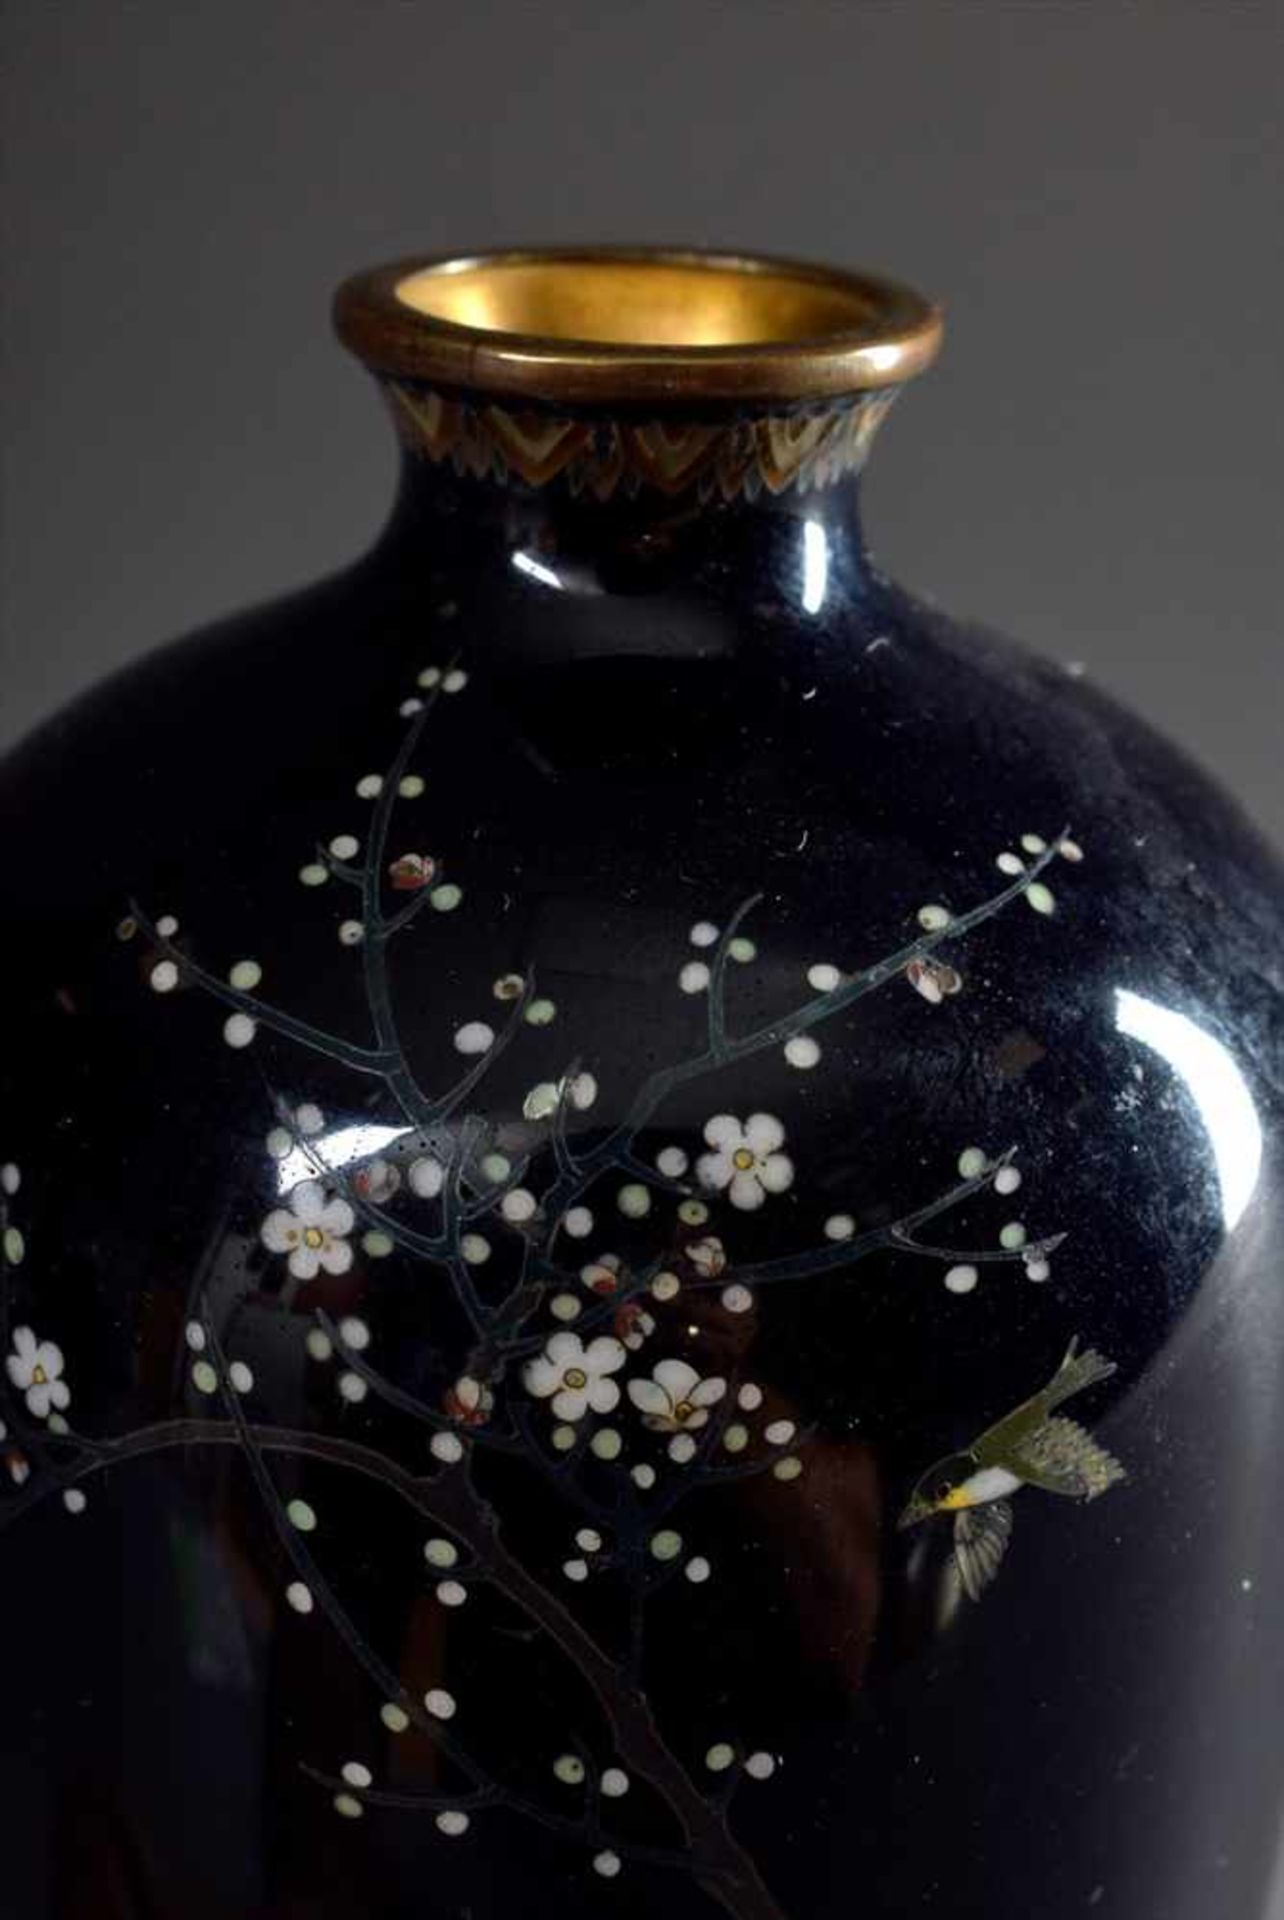 Bauchige Cloisonné Vase mit lupenfeiner Dekoration "Sperling, Chrysanthemen und Prunuszweig", - Image 2 of 3